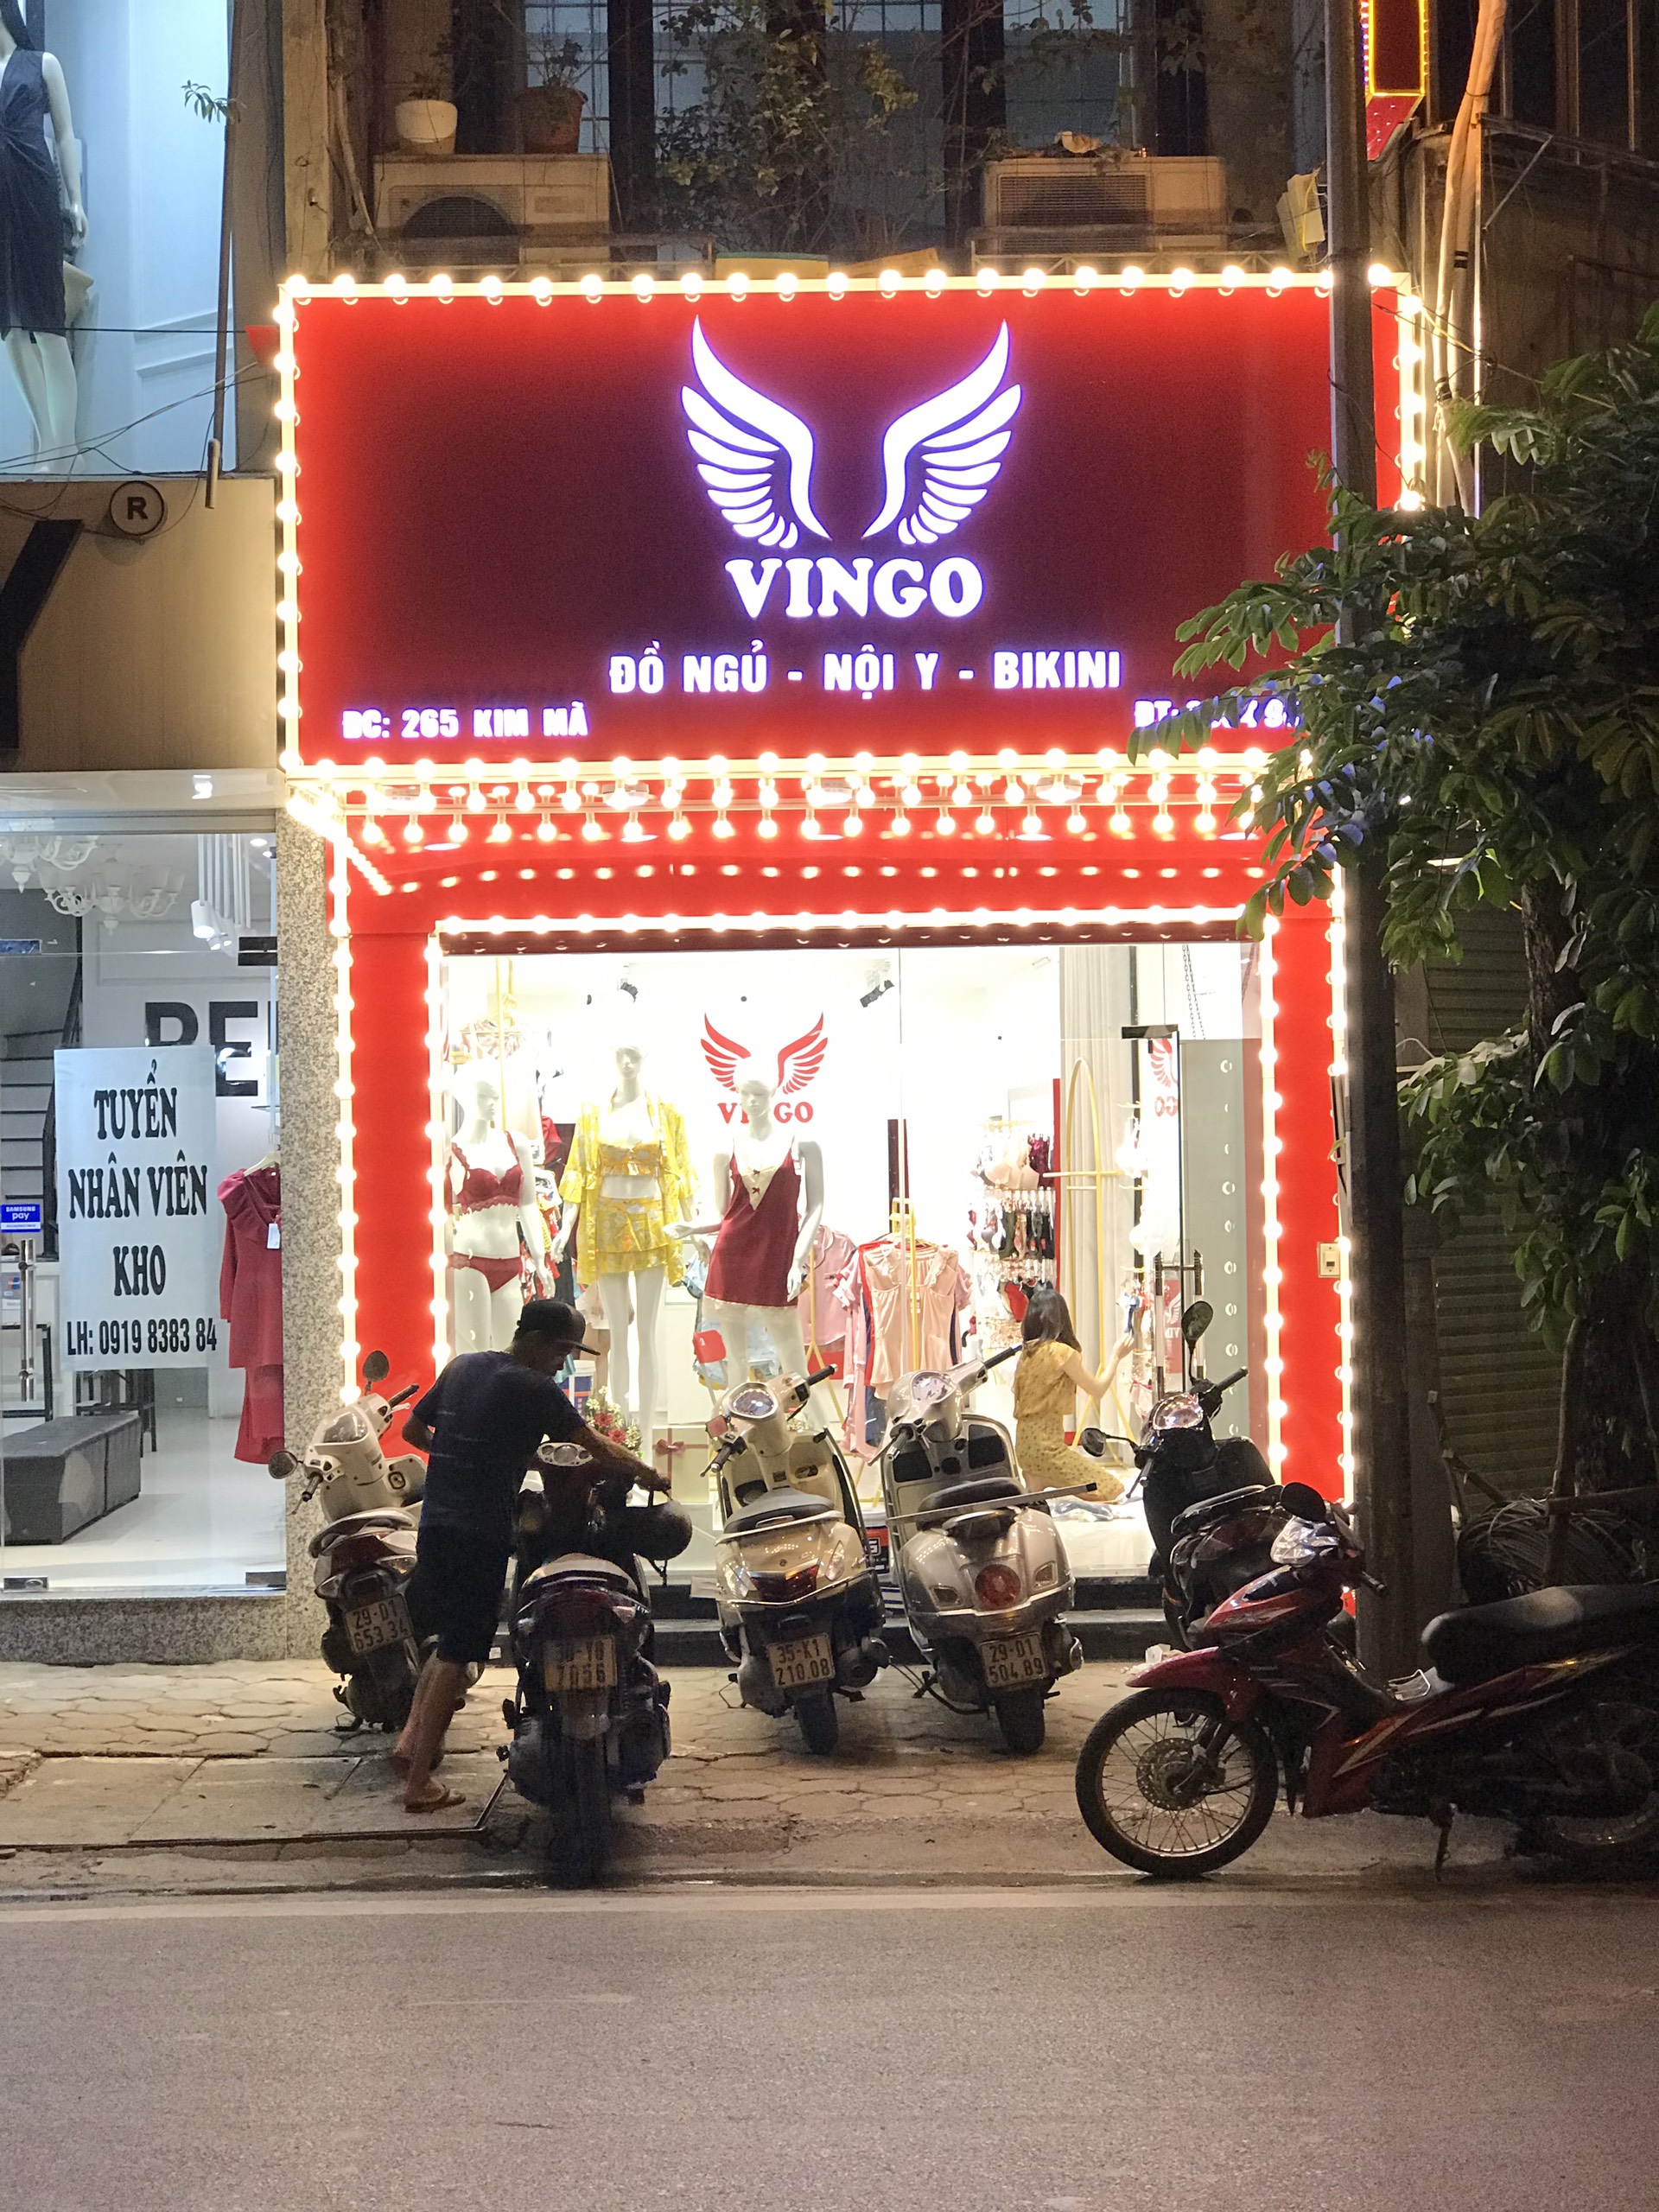 Biển quảng cáo shop thời trang Vingo tại Hà nội